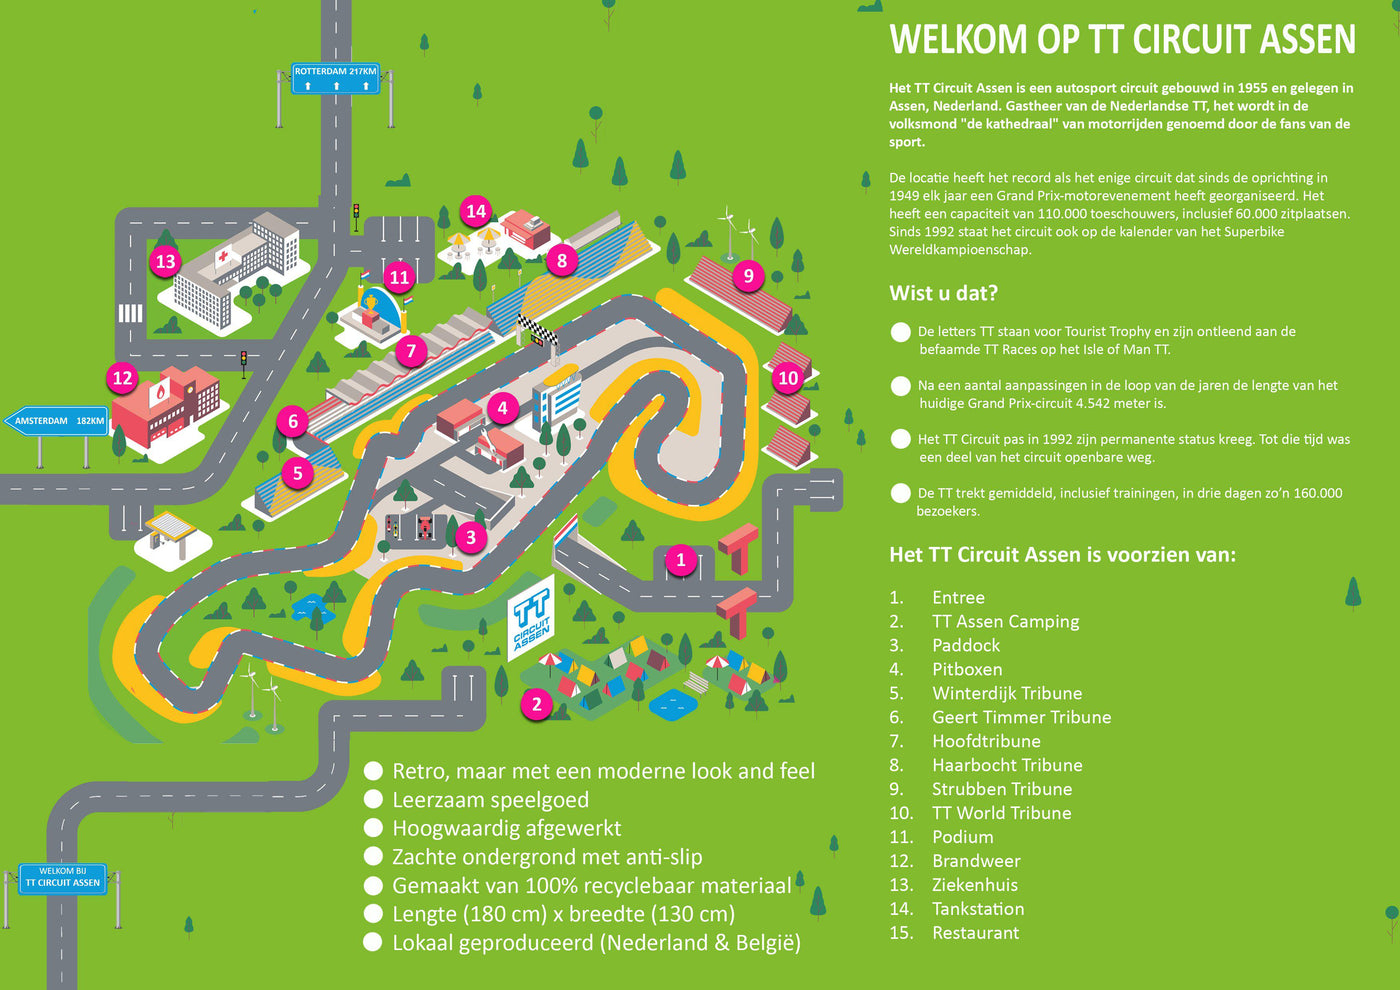 Speelkleed TT Circuit Assen-Speelkleed-jouwspeelkleed.nl